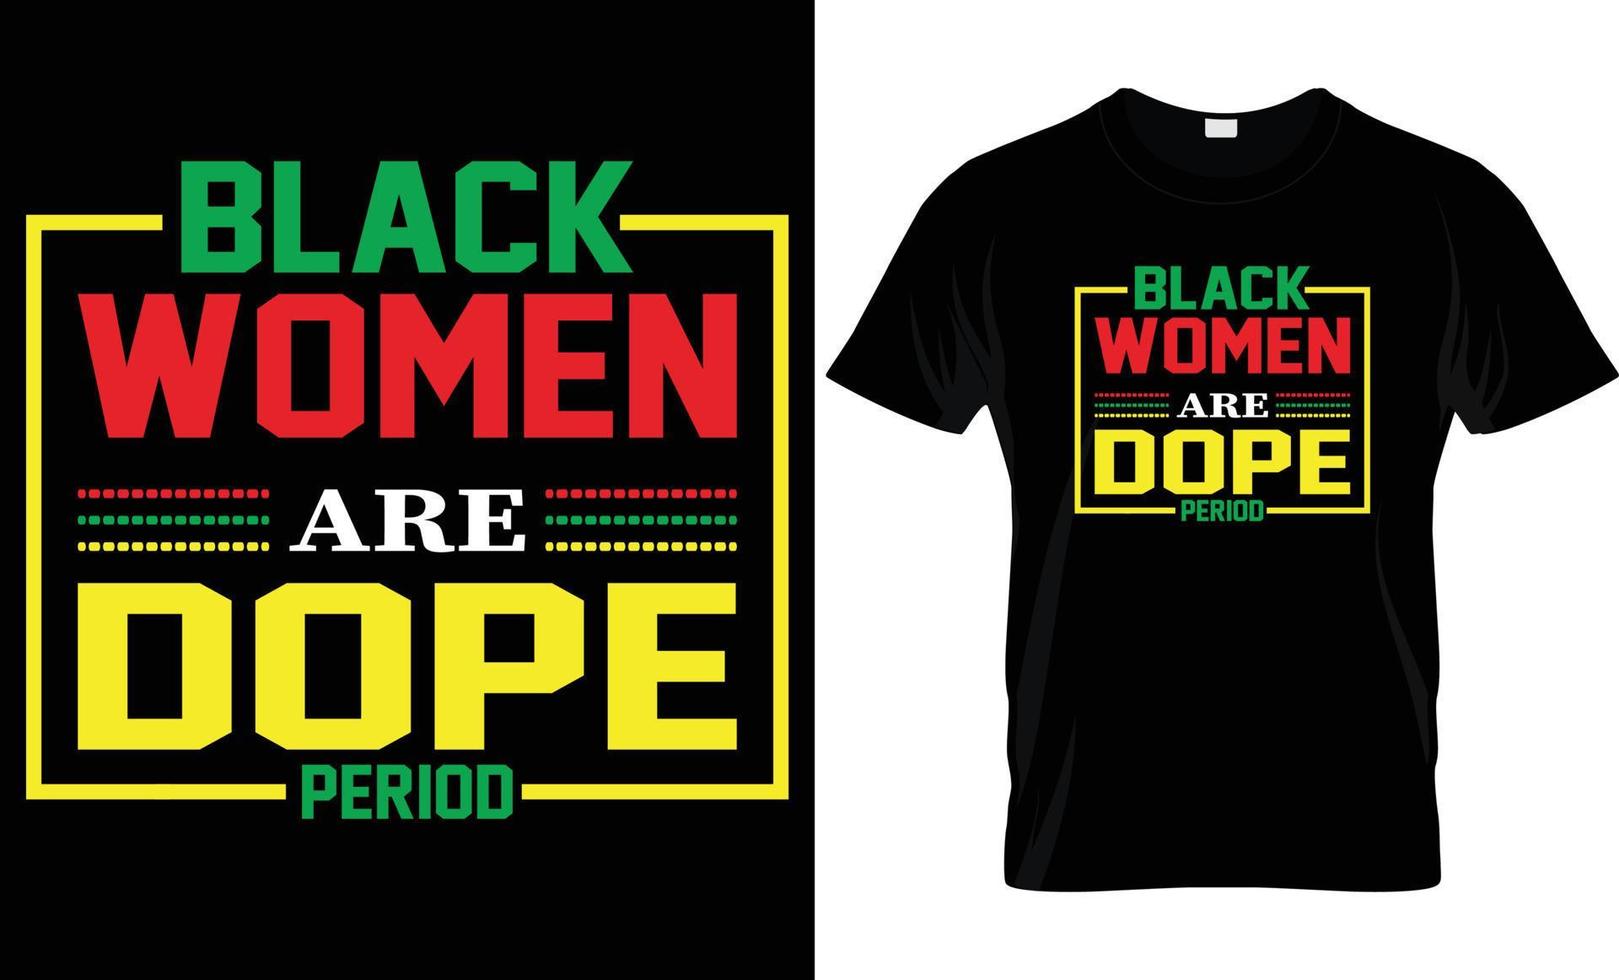 zwart geschiedenis t - overhemd ontwerp vector